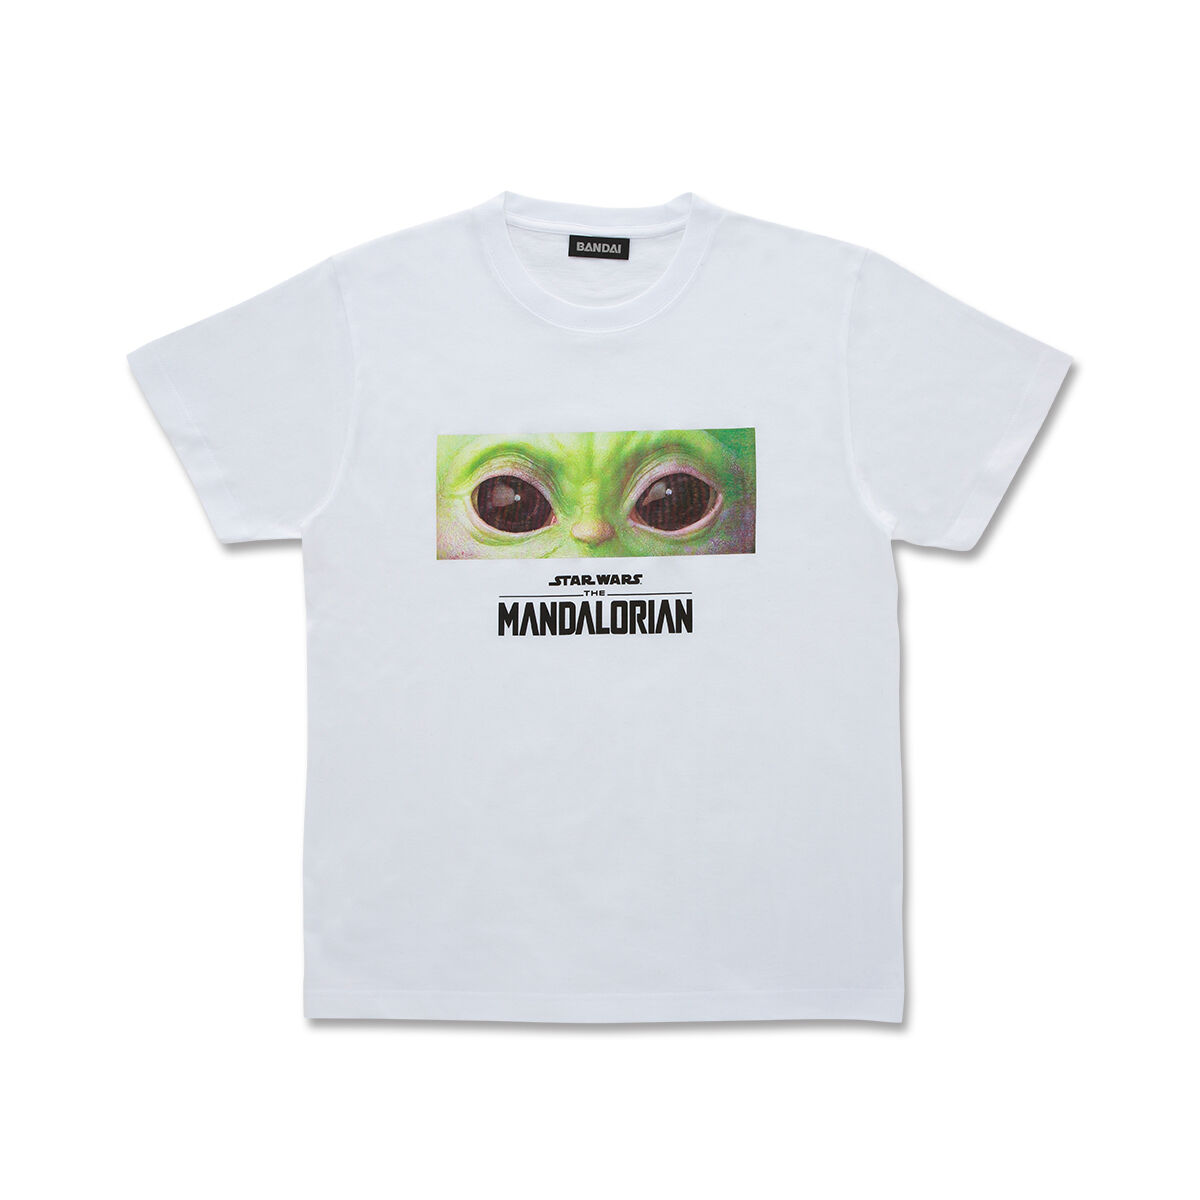 The mandalorian/マンダロリアン the child eye Tシャツ | STAR WARS 